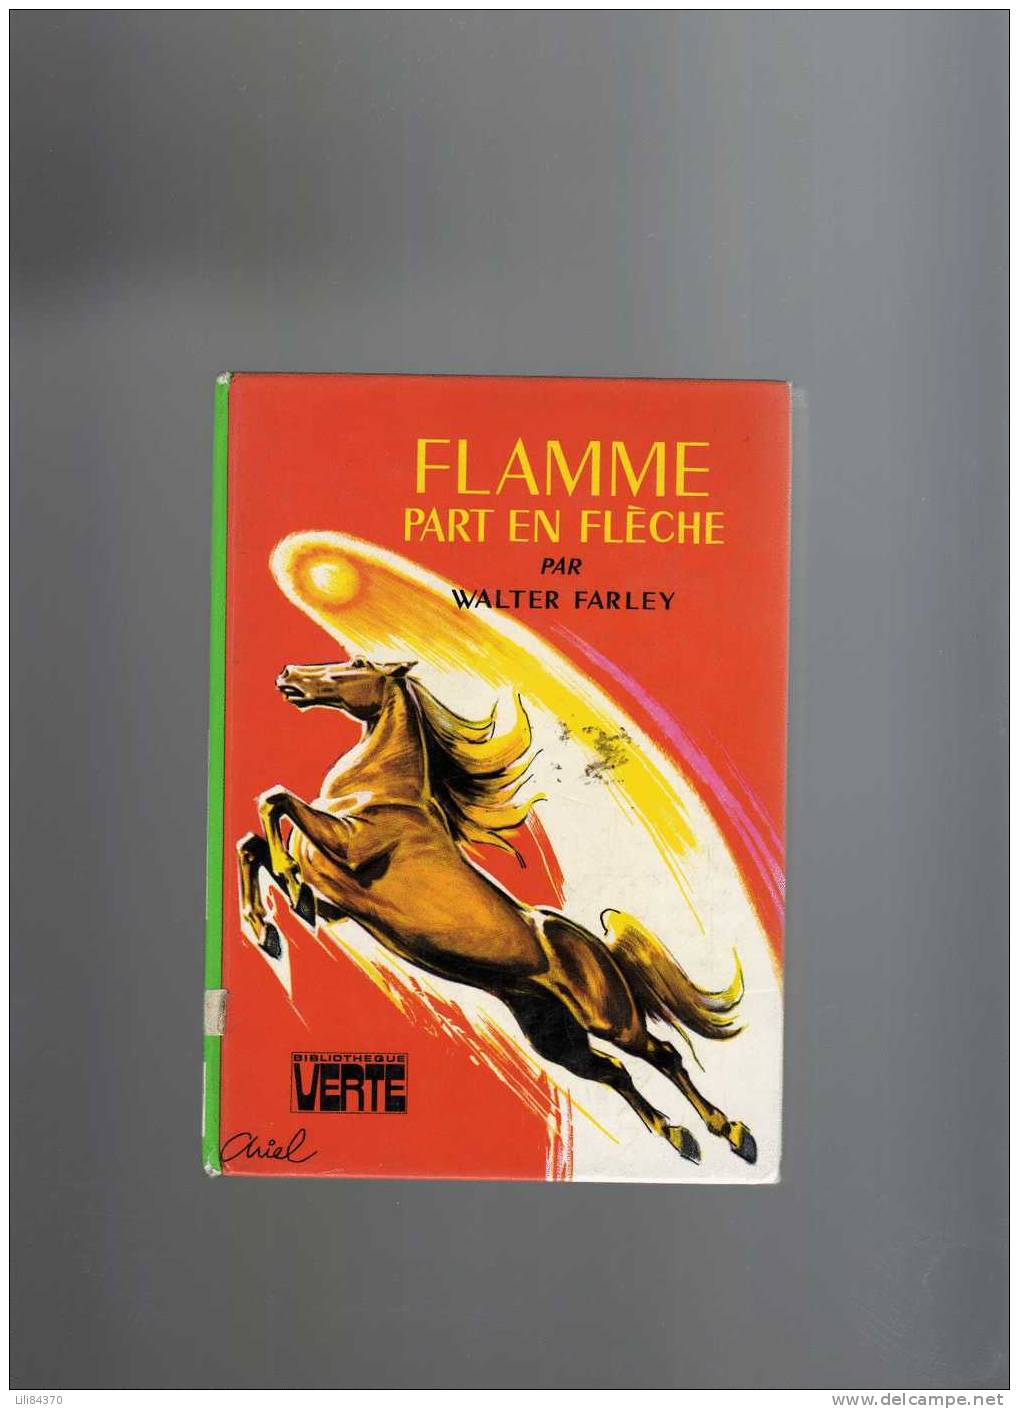 FLAMME Par En Fleche    Par    Walter FARLEY - Bibliotheque Verte